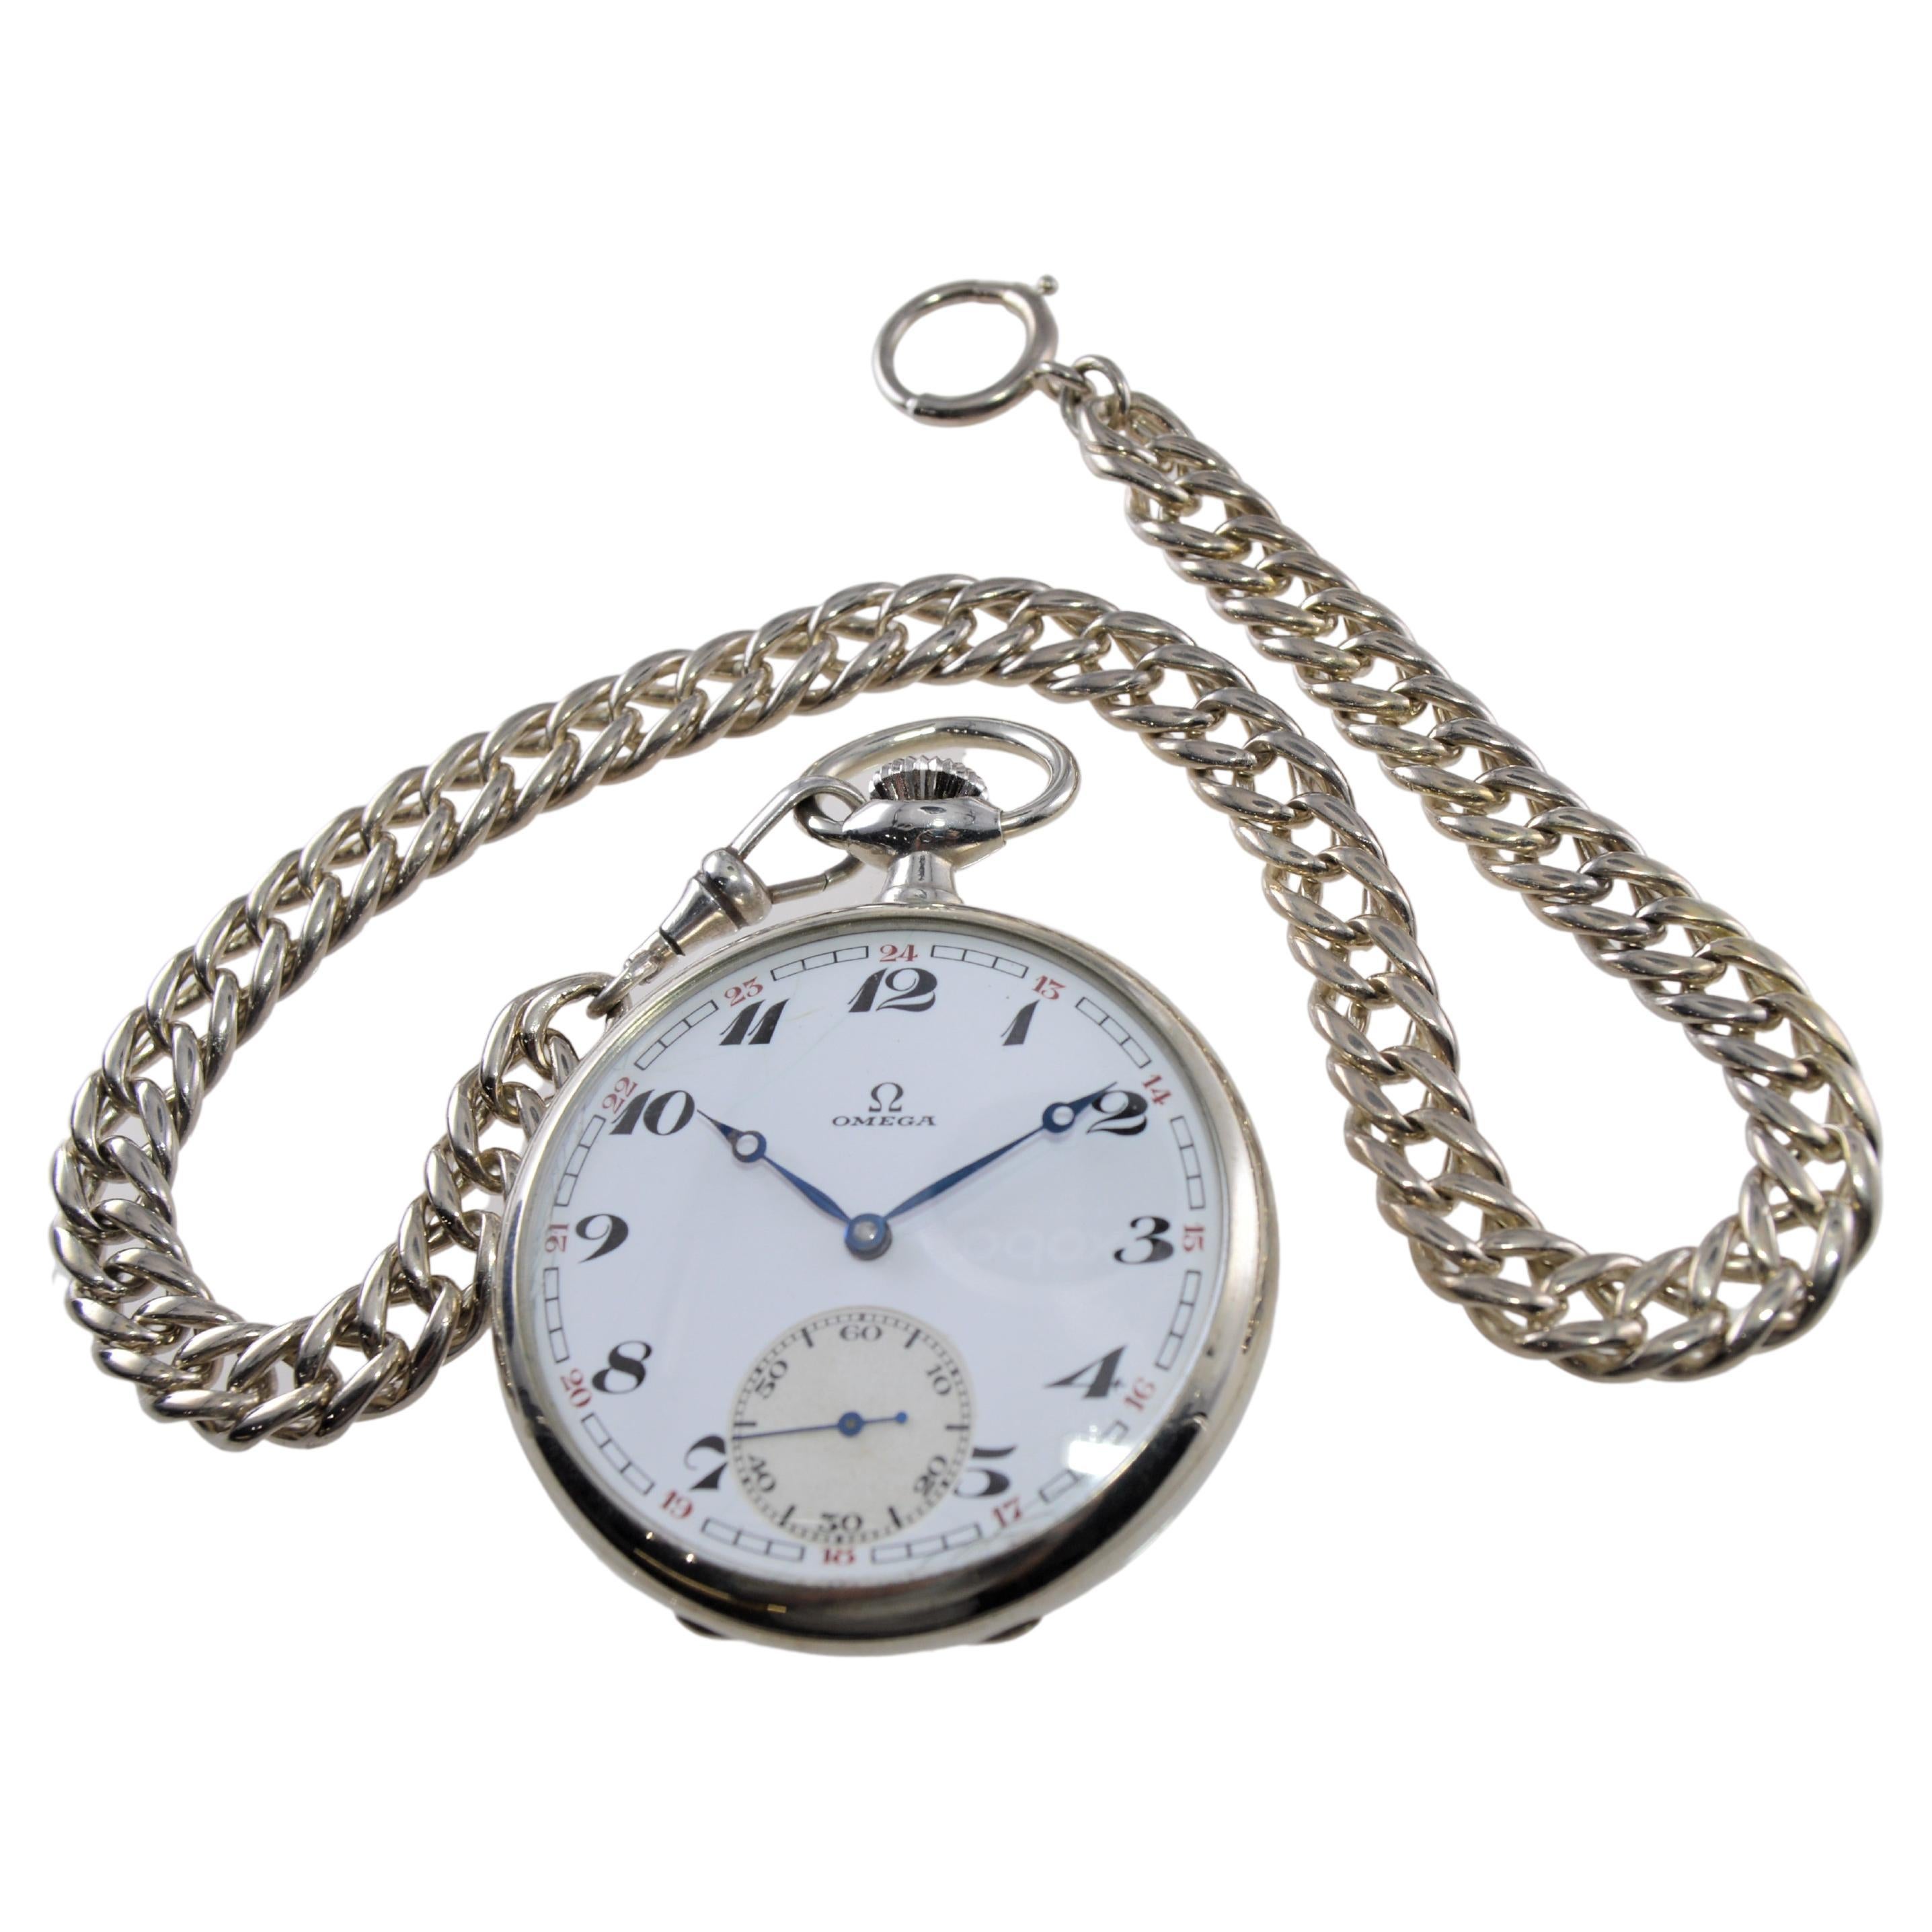 FABRIK / HAUS: Omega Watch Company
STIL / REFERENZ: Taschenuhr mit offenem Gesicht
METALL / MATERIAL: Neusilber
CA. / JAHR: 1928 / 29
ABMESSUNGEN / GRÖSSE:  Durchmesser 49mm
UHRWERK / KALIBER: Handaufzug / 15 Jewels 
ZIFFERBLATT / ZEIGER: